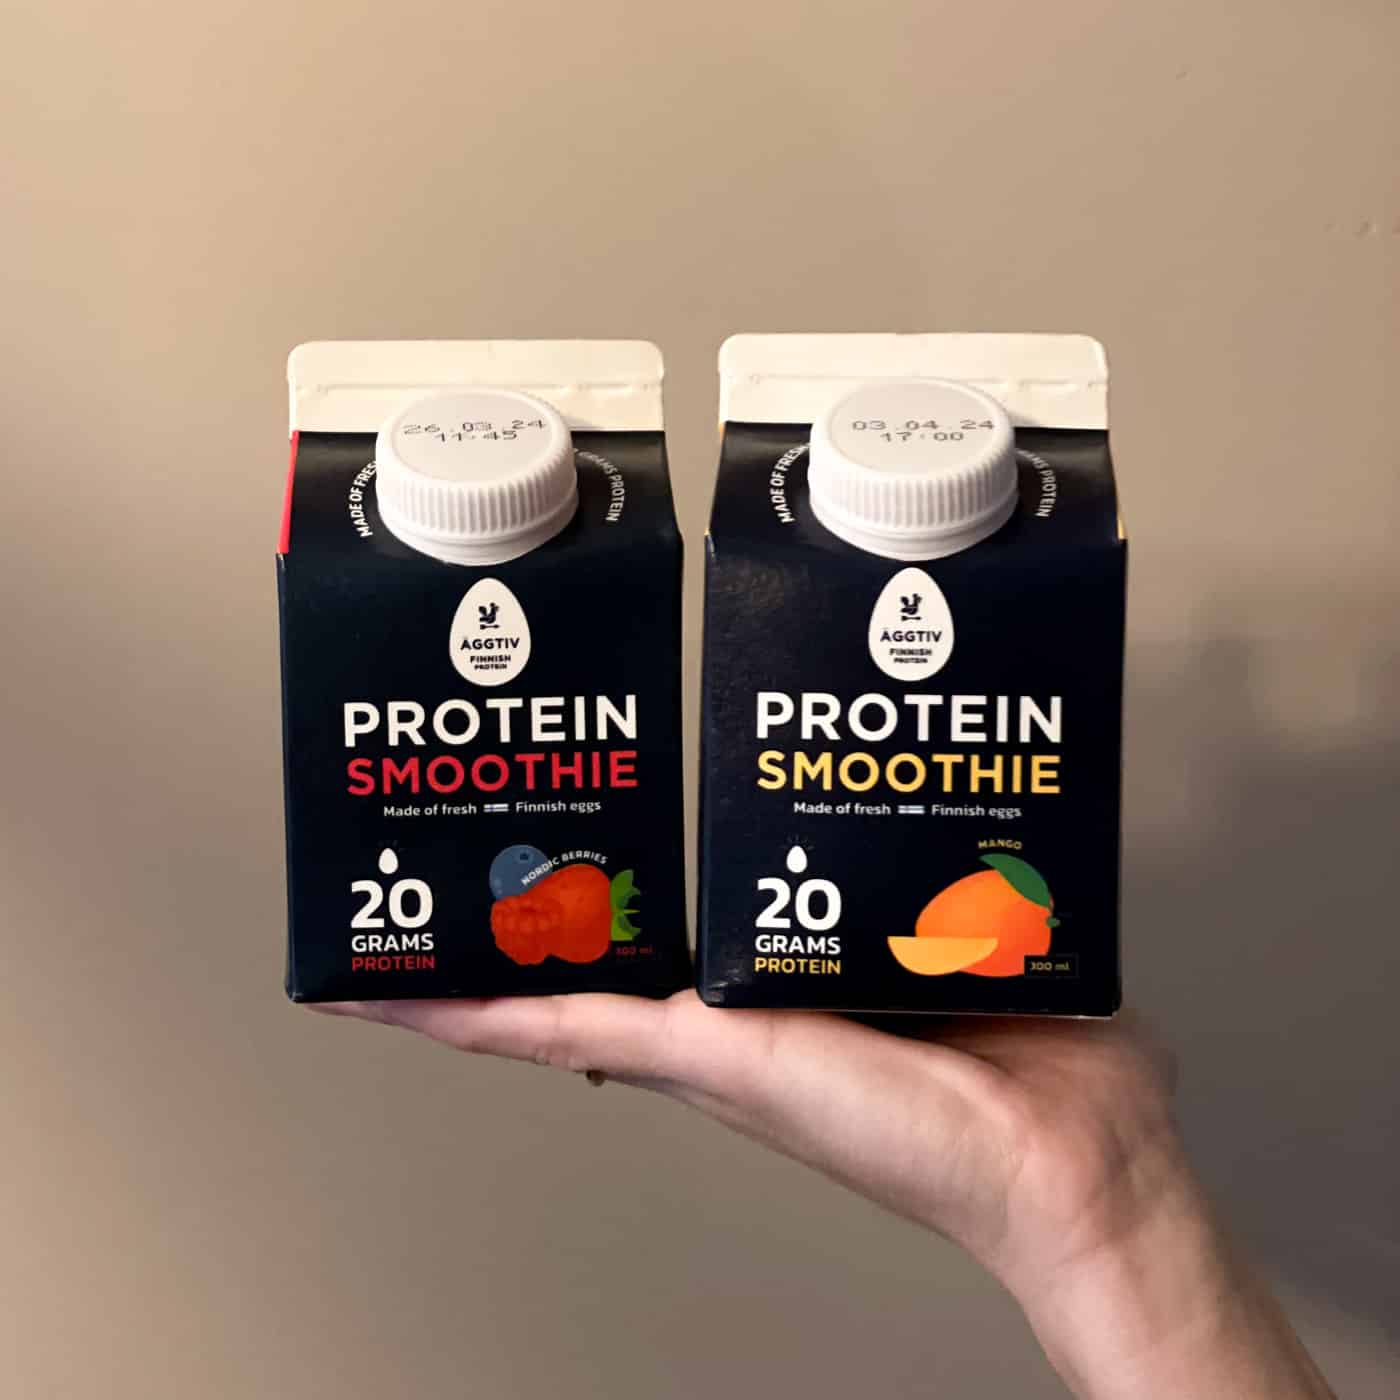 Äggtiv - Protein smoothie